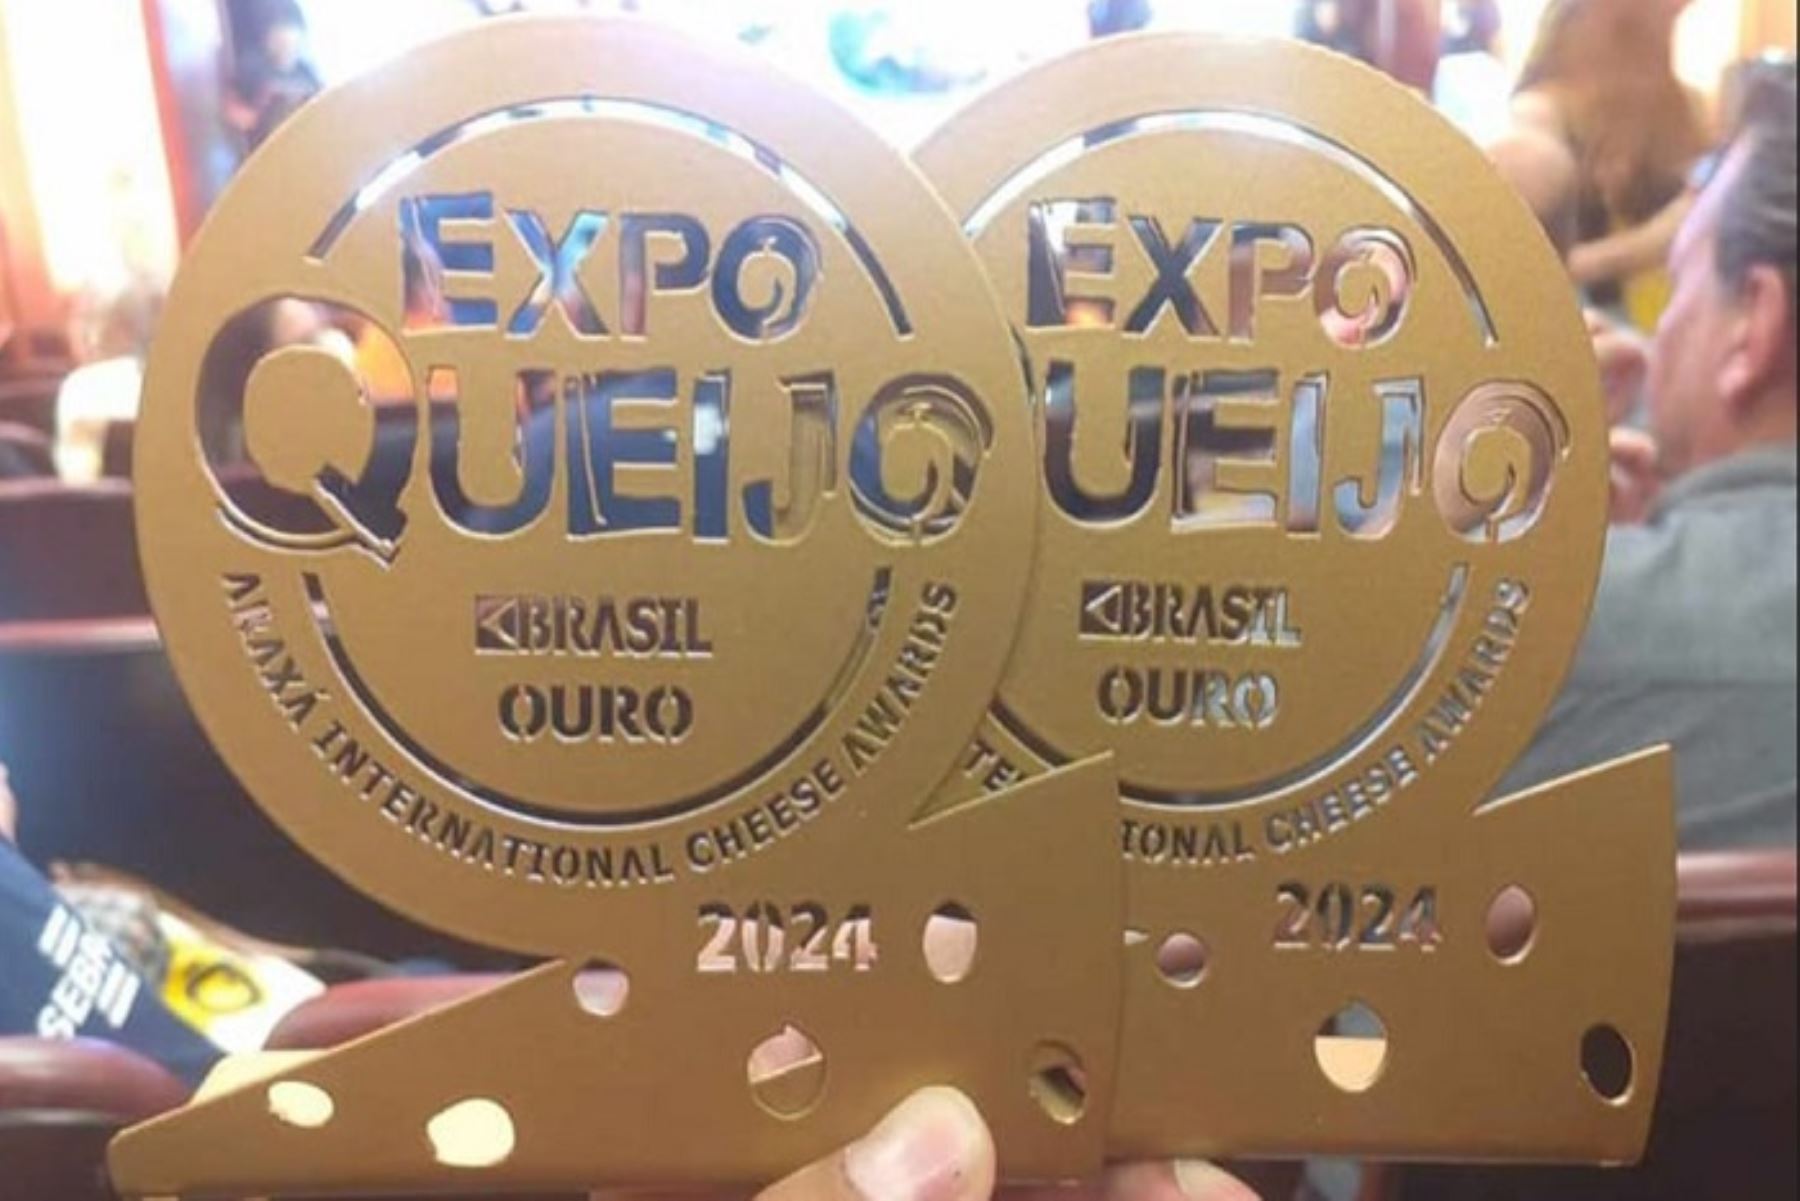 La marca SamanLac de la región Puno obtuvo la medalla de oro con su queso Tilsi, mientras la marca Lácteos Conga de la región Cajamarca obtuvo medalla de plata con su queso andino “Chota” con finas hierbas.